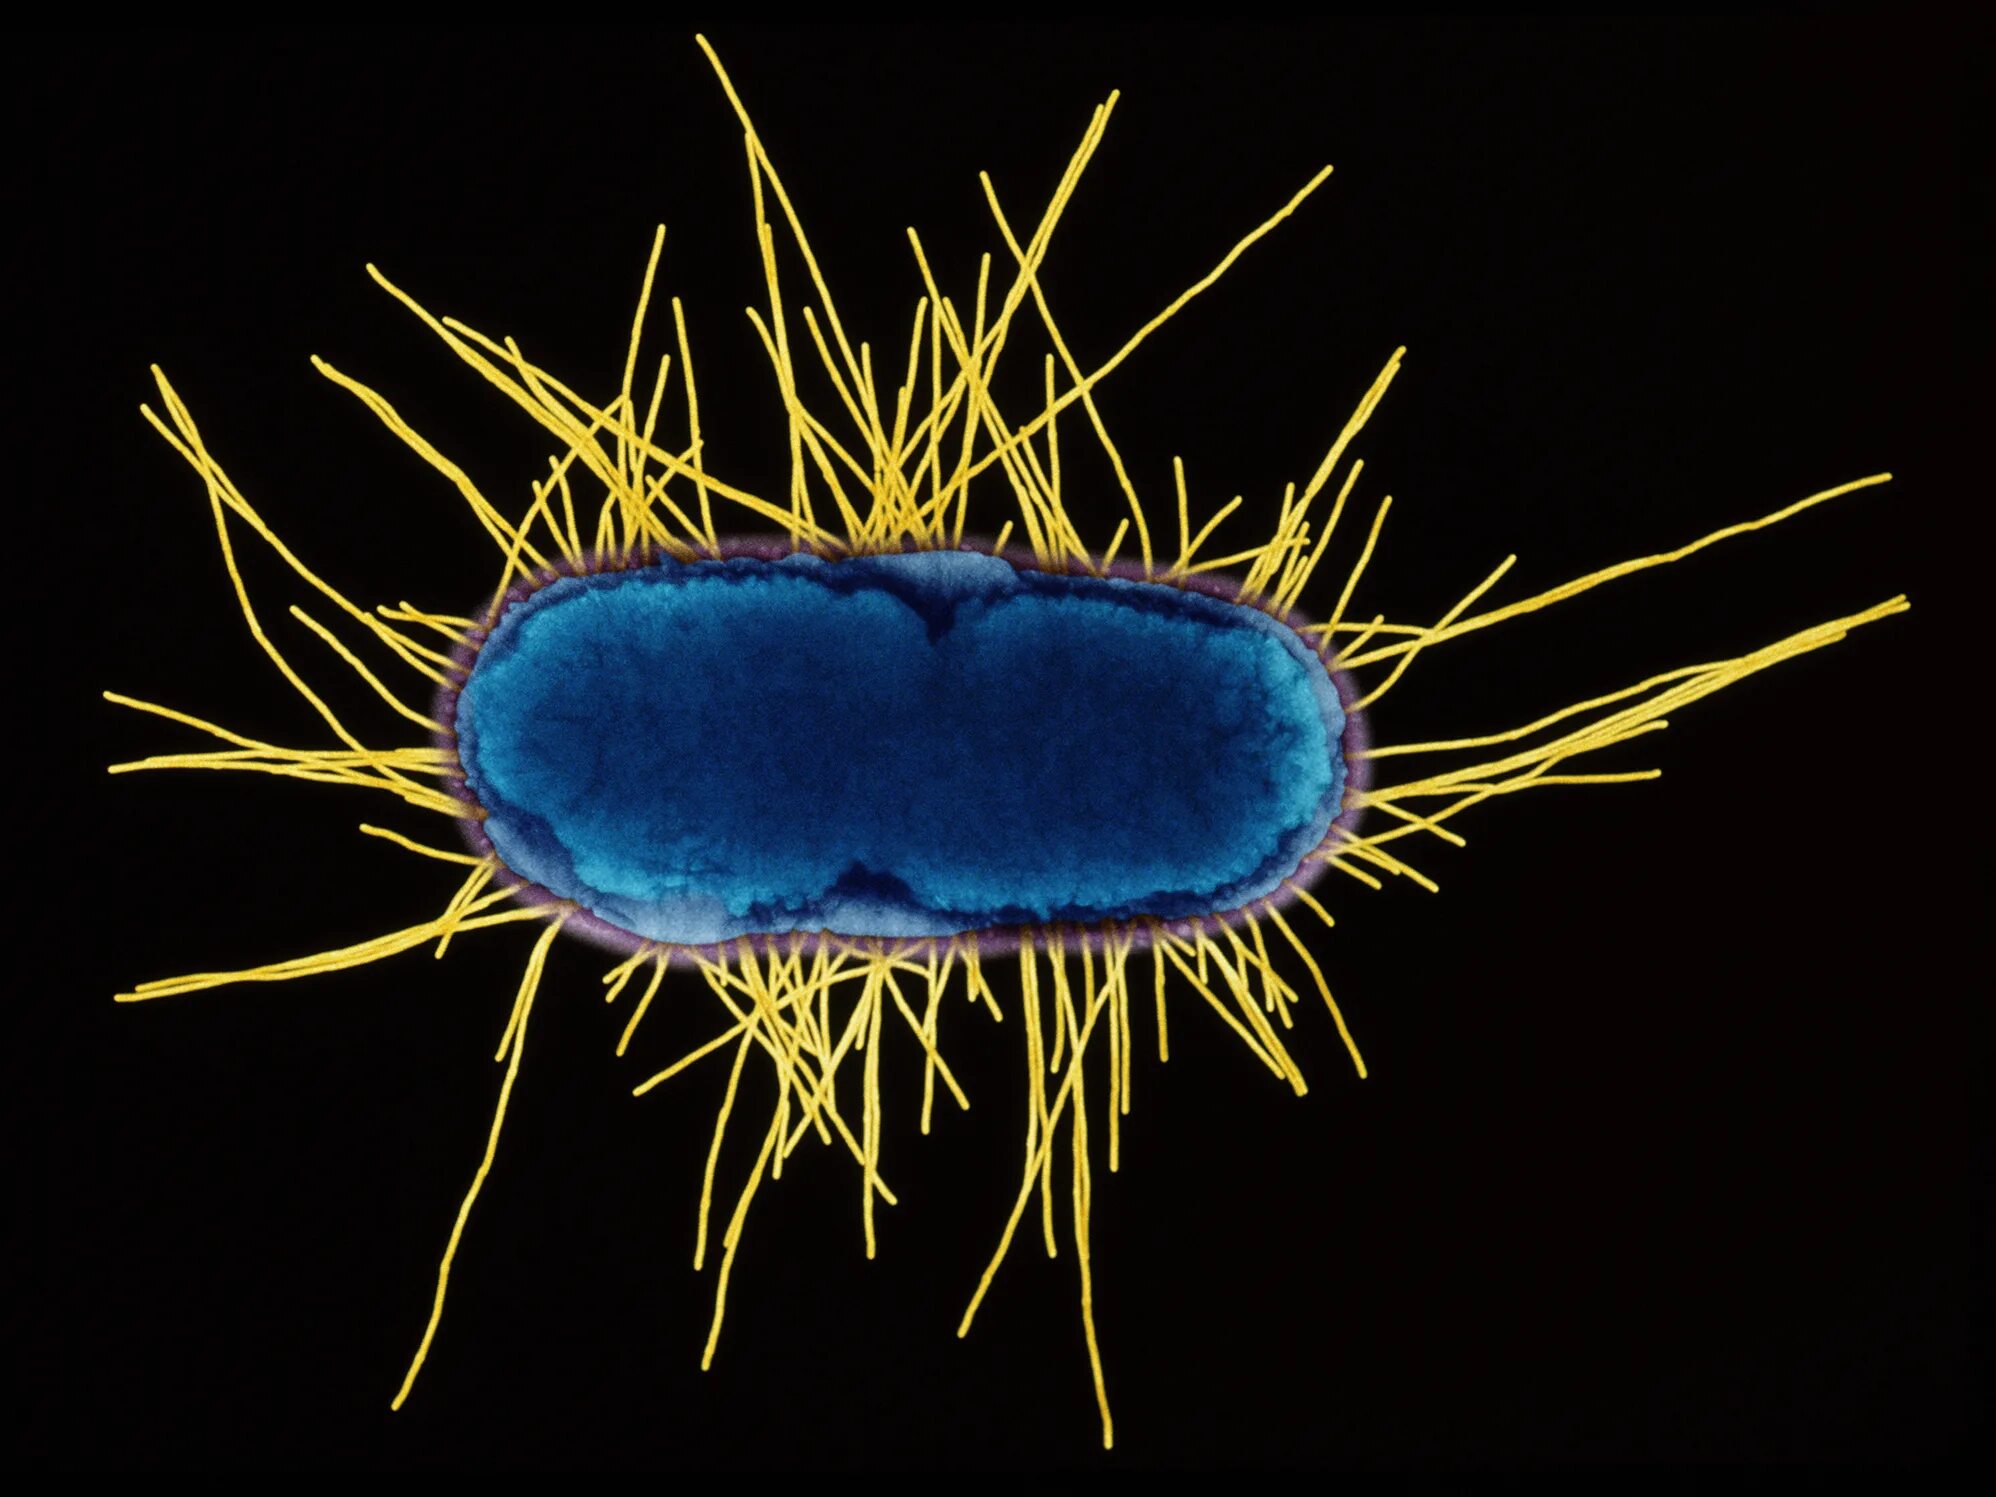 Рубцовые бактерии. Микробные клетки e. coli. Макет бактерии. Модель бактерии. Бактериальная клетка под микроскопом.